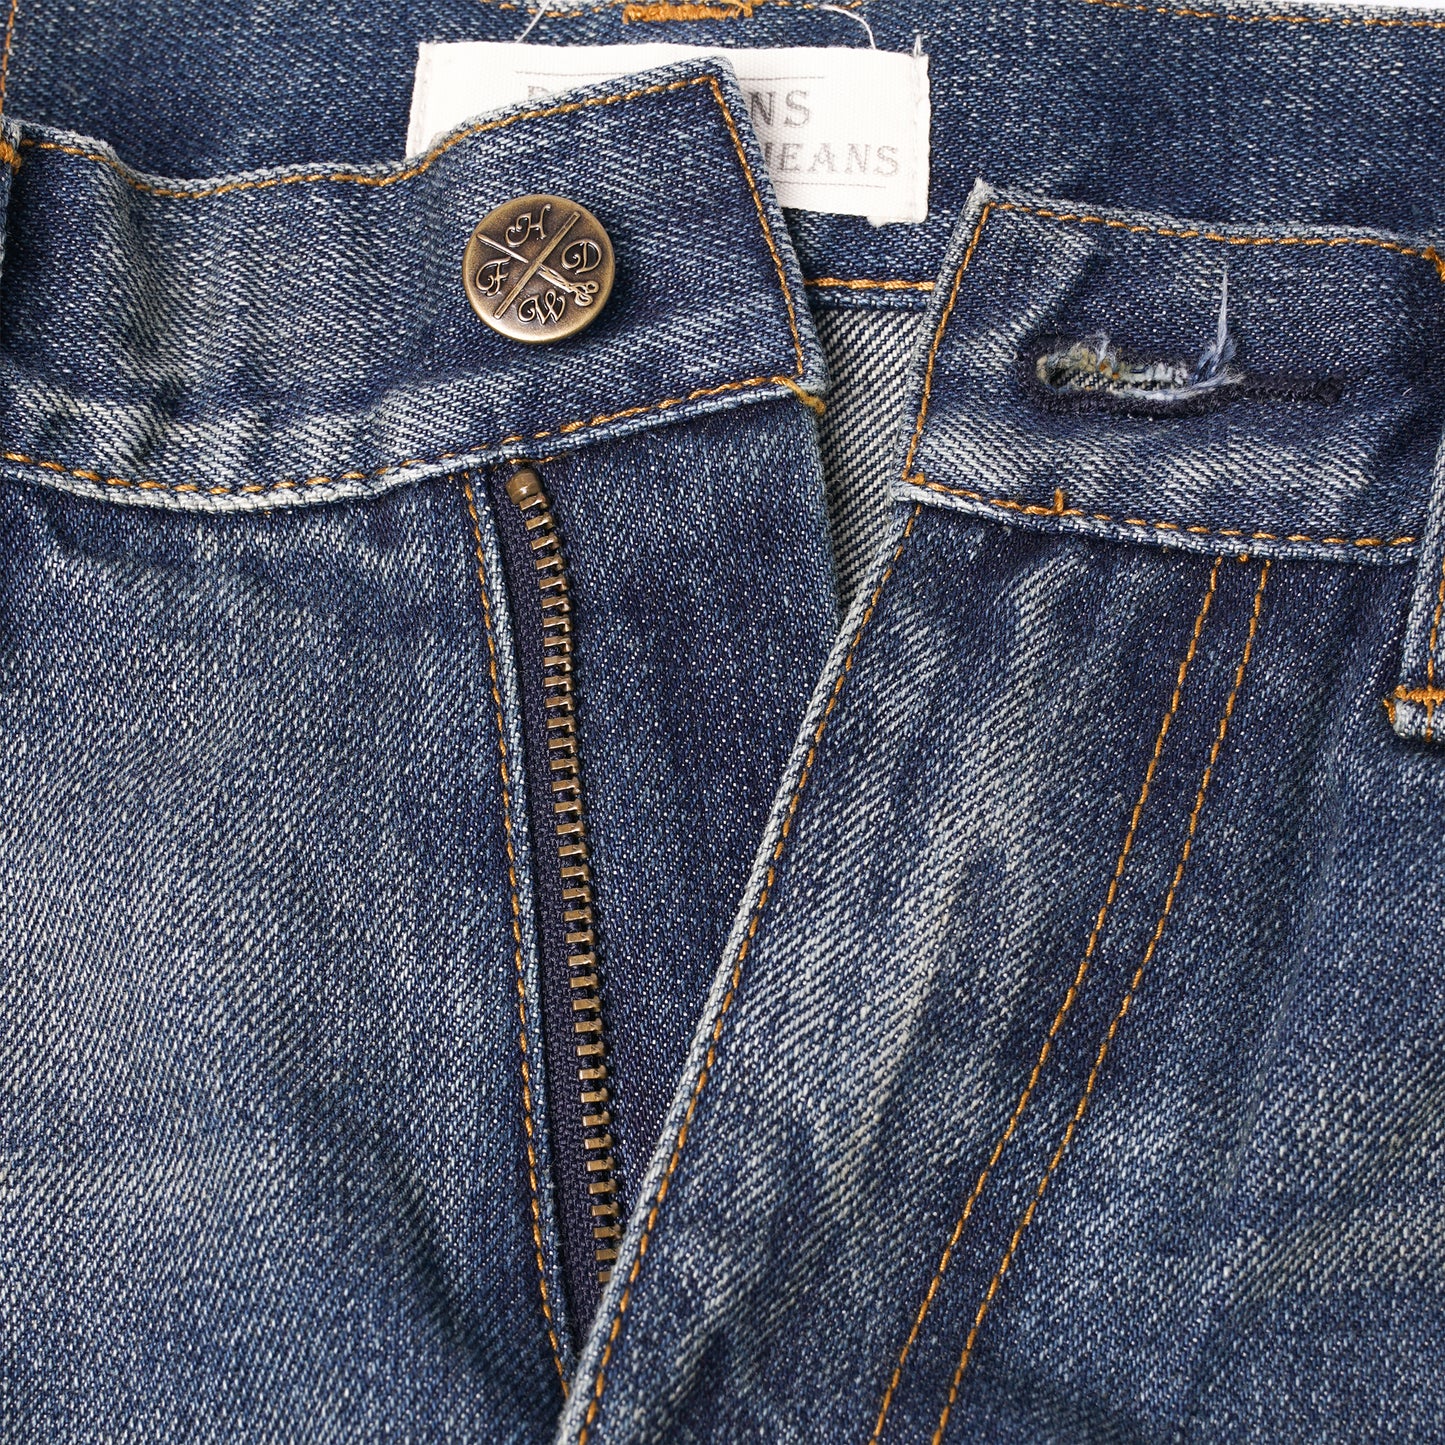 【訂製】R84 Vintage Washed 14oz. Slim Cut Jeans